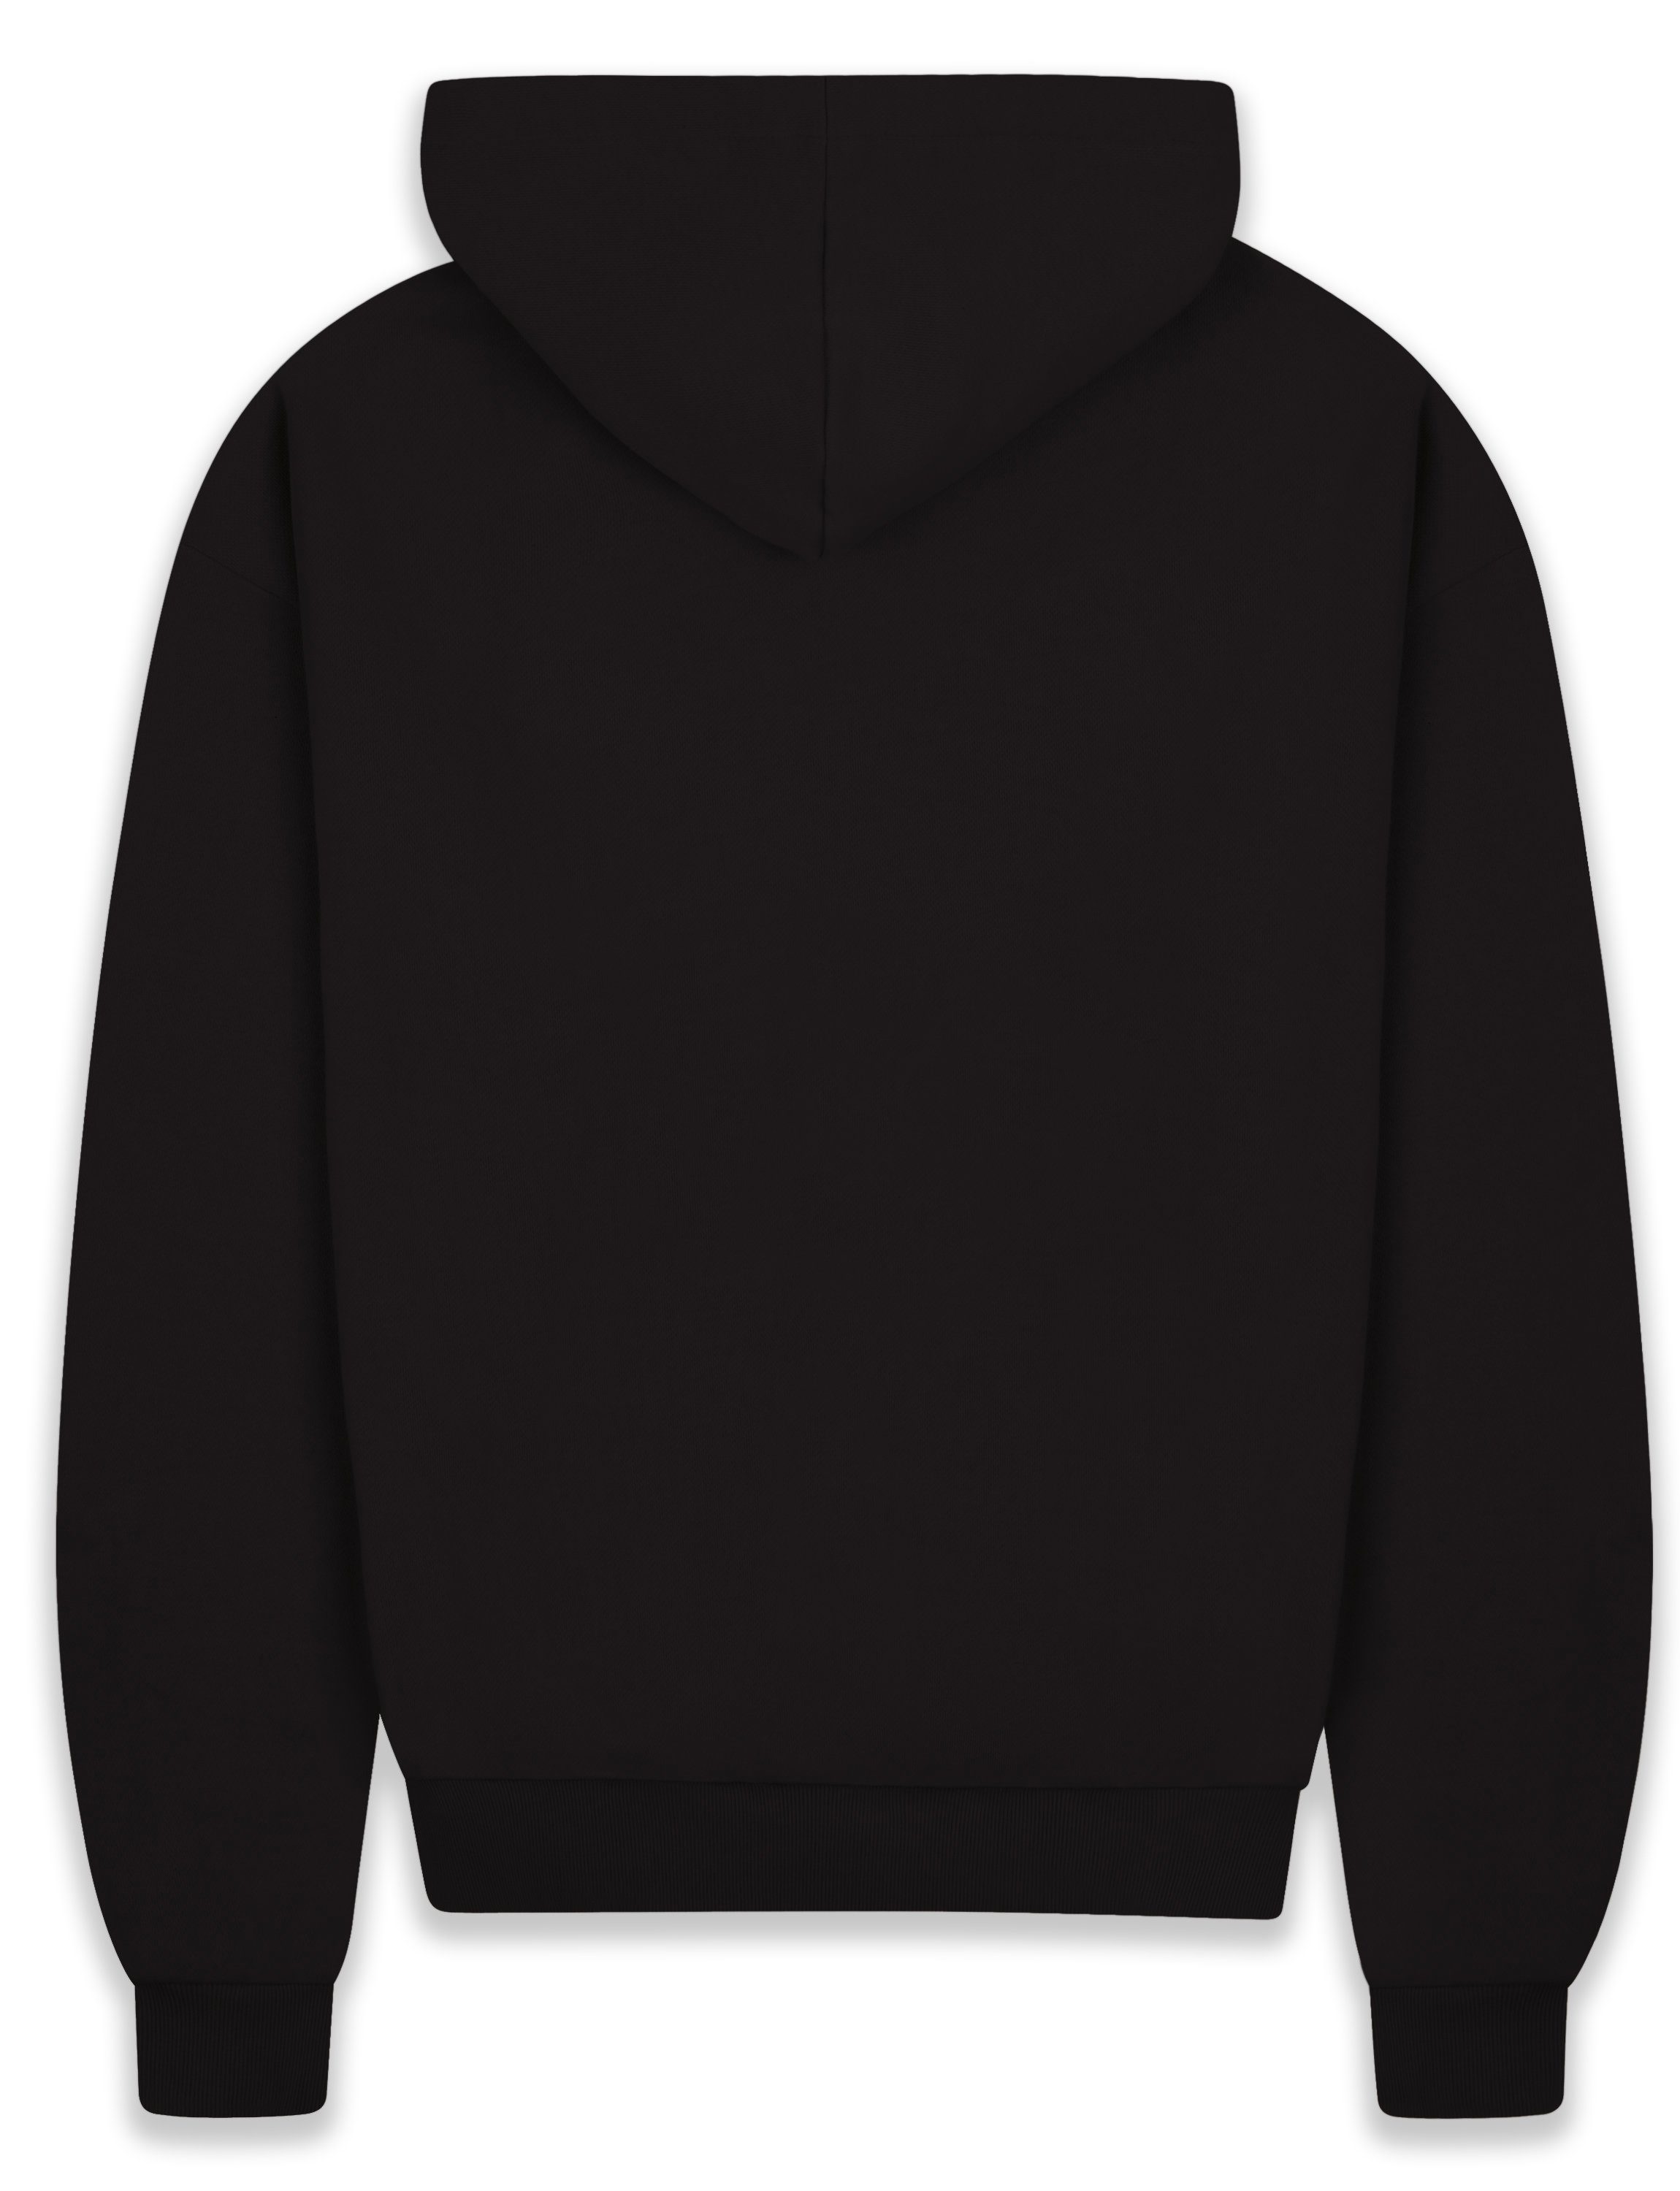 Herren BR-H-1 Dropsize Oversize 430 Hoodie Kapuzen-Pullover Heavy Black GSM Hoodie Sweater Herren